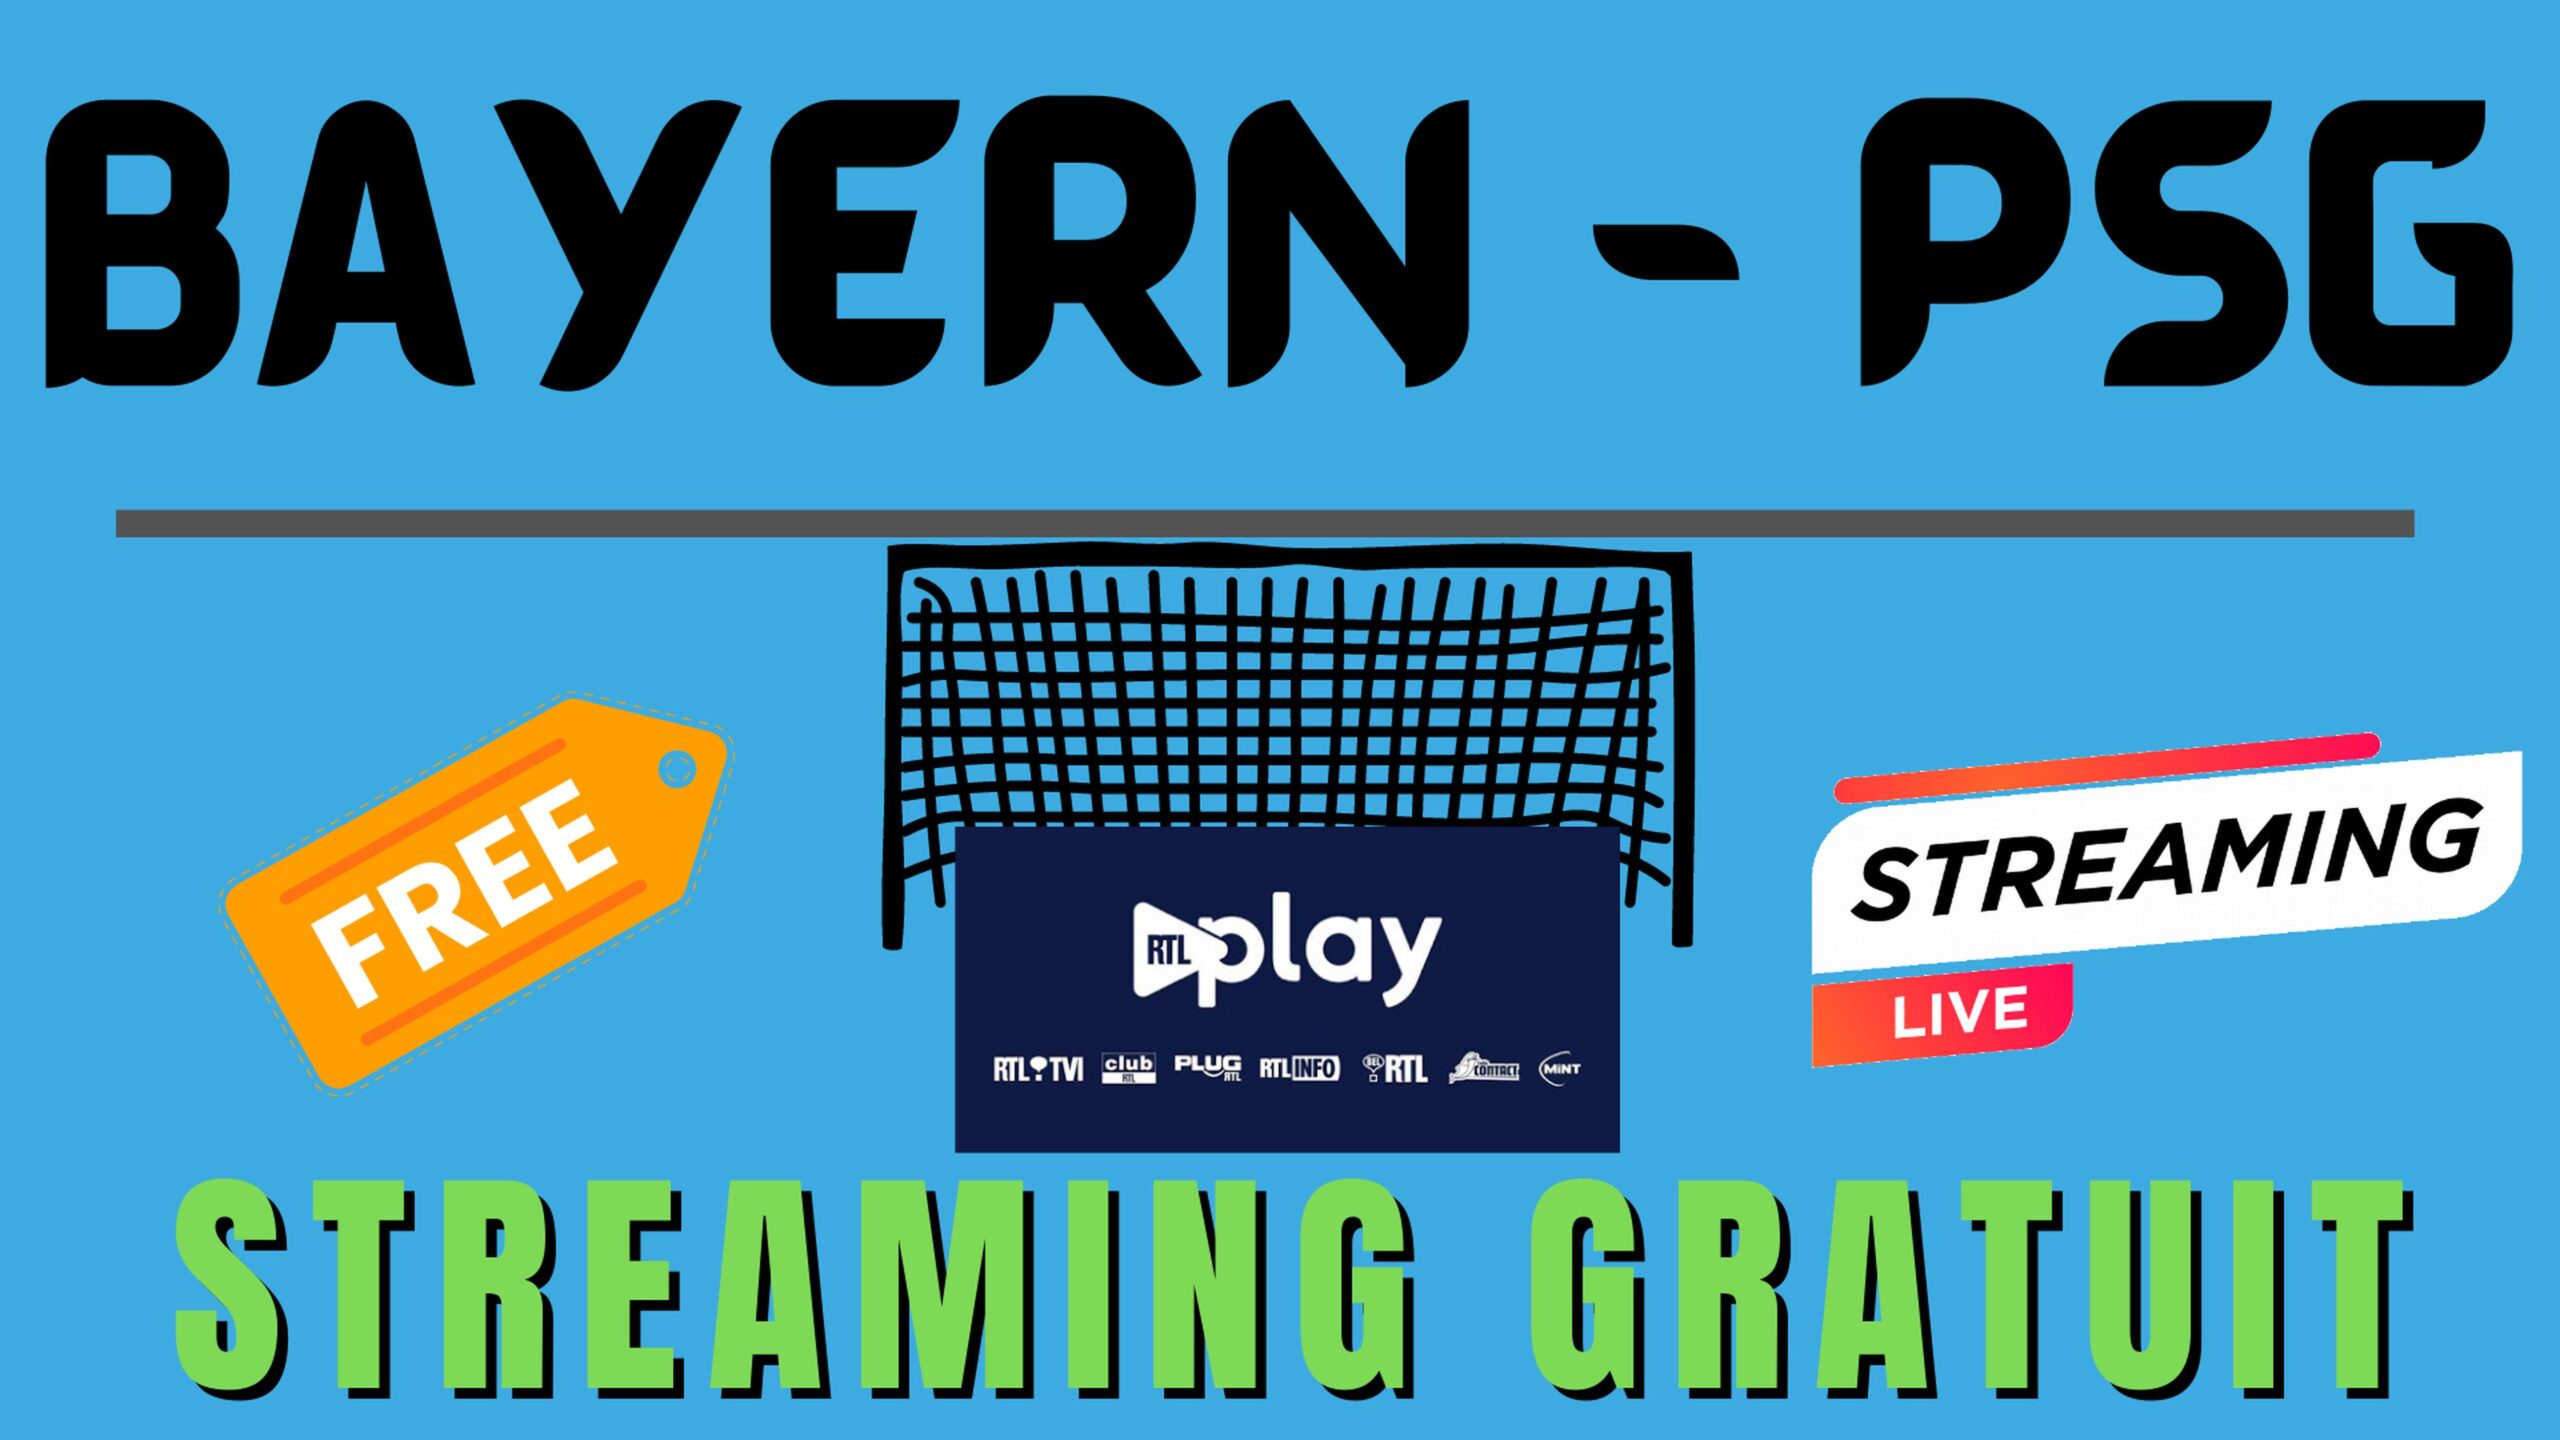 Bayern PSG - Streaming gratuit (chaîne étrangère) 21